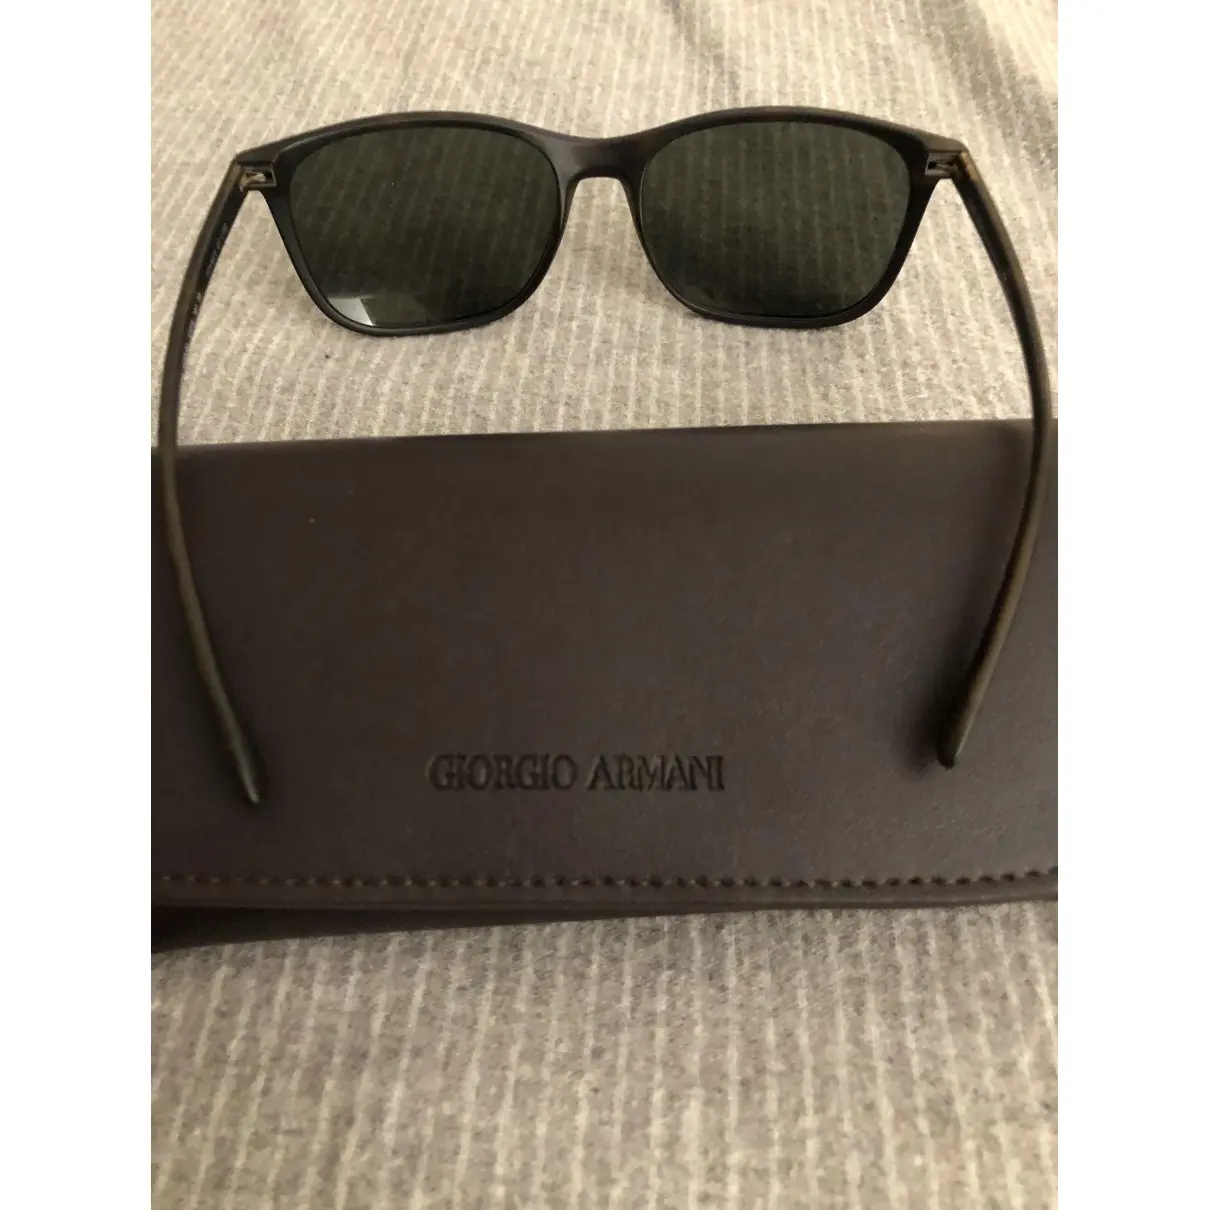 Luxury Giorgio Armani Sunglasses Men